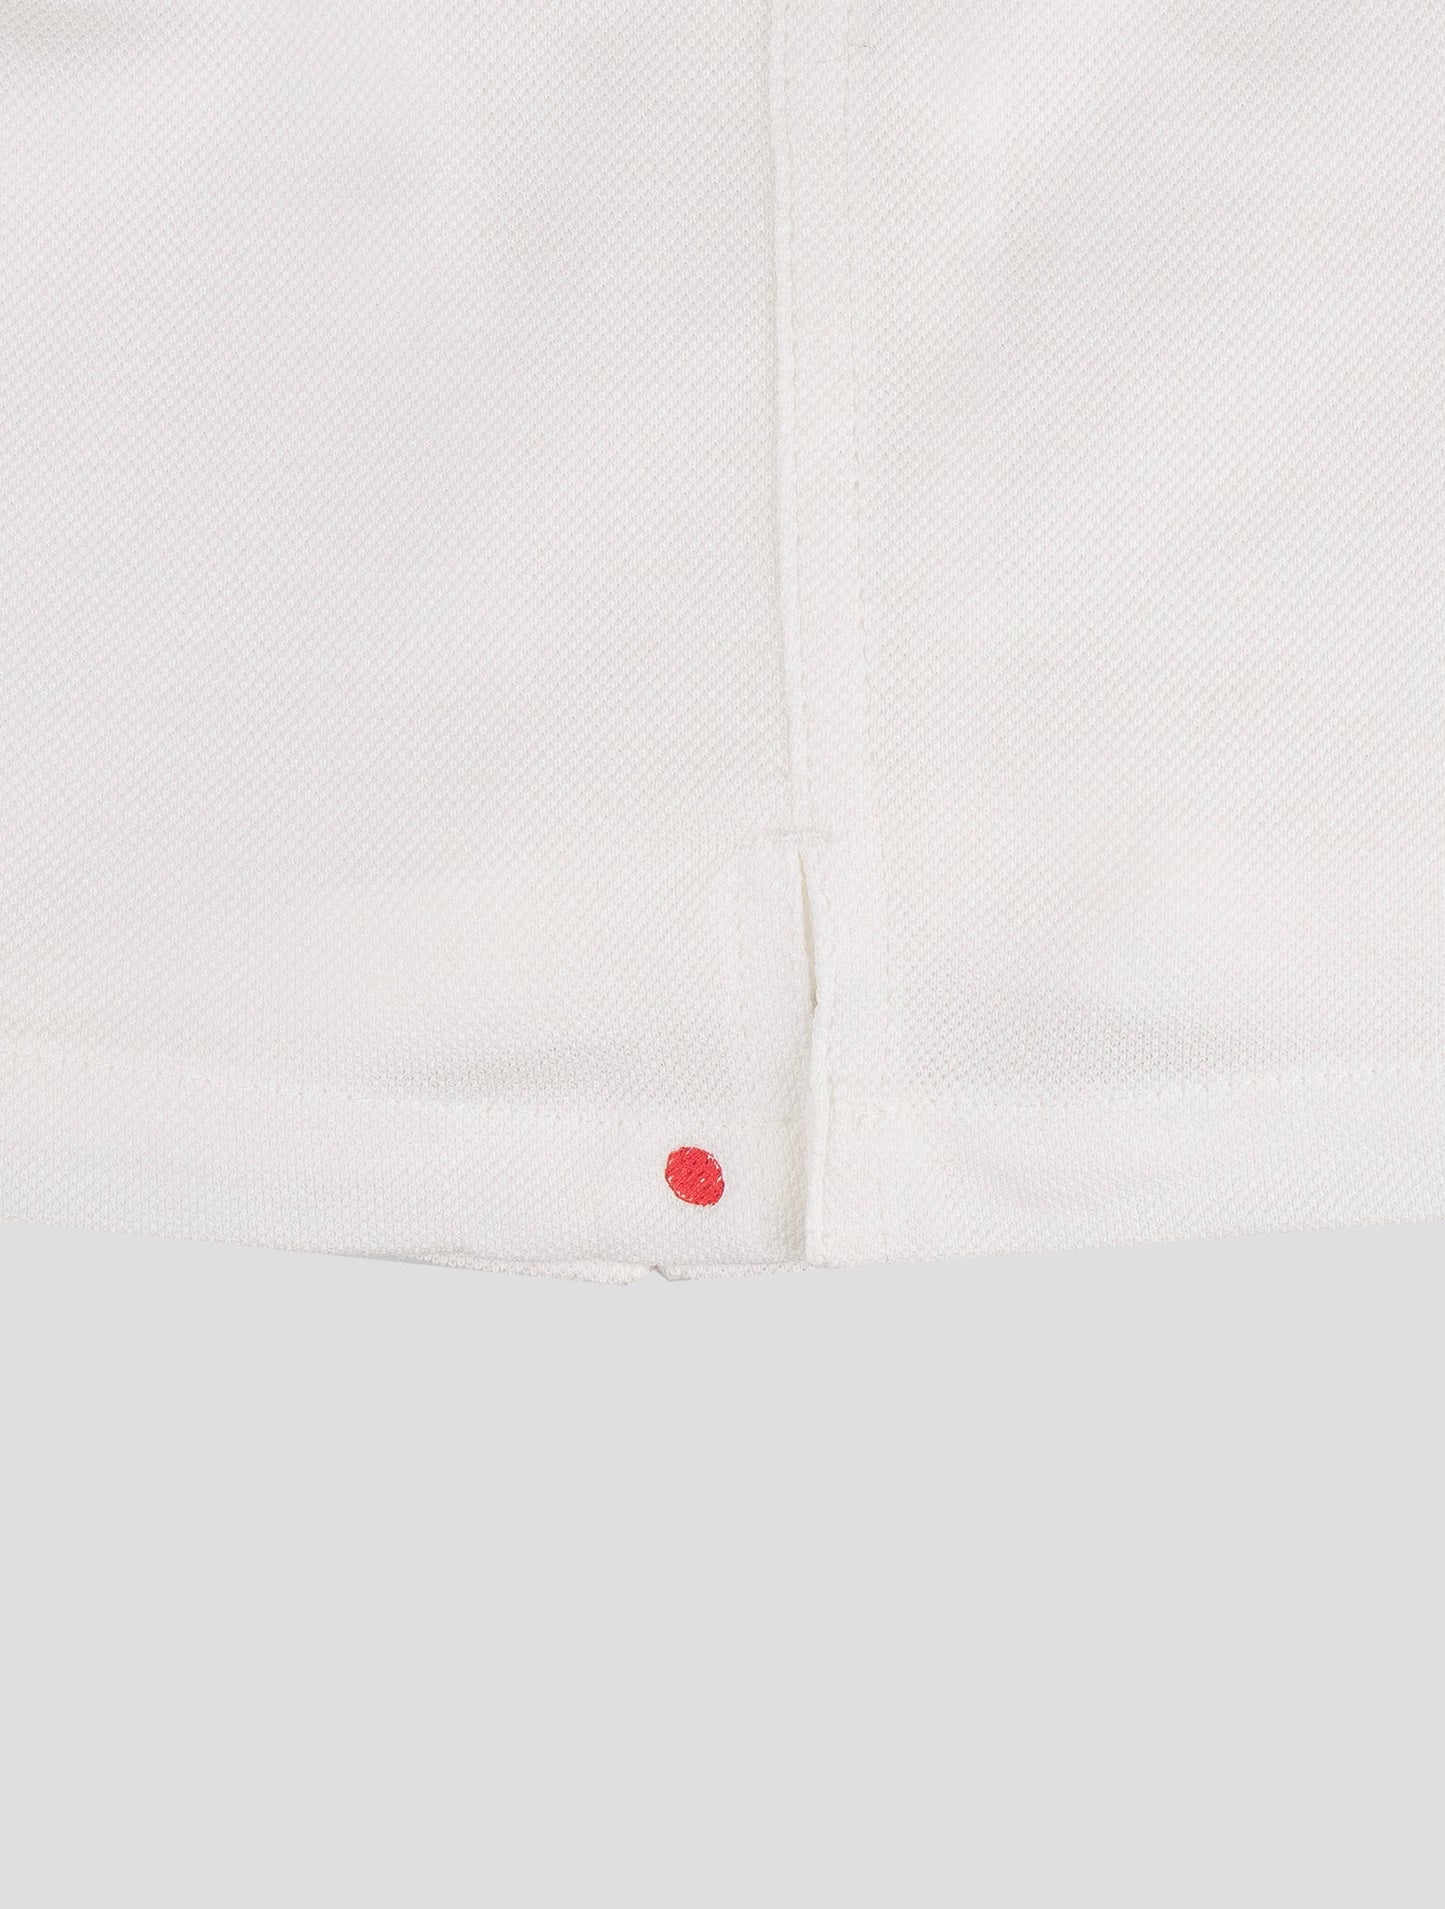 Kiton Matching Outfit - Blå Umbi og hvide korte bukser træningsdragt